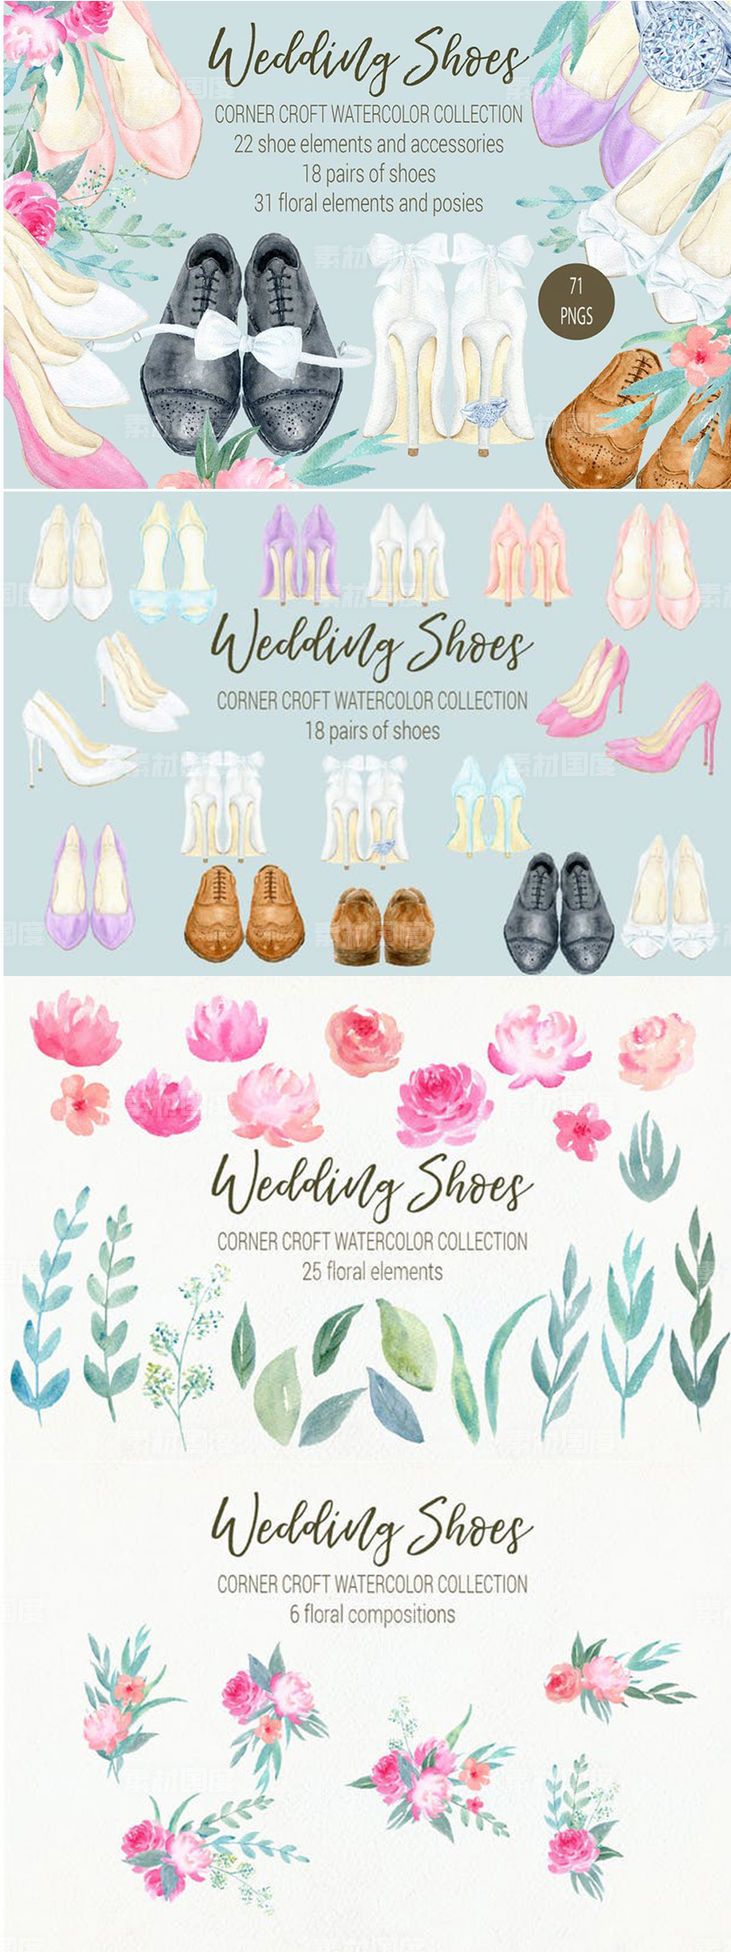 婚礼鞋水彩元素剪贴画合集 Watercolor Wedding Shoes Collection